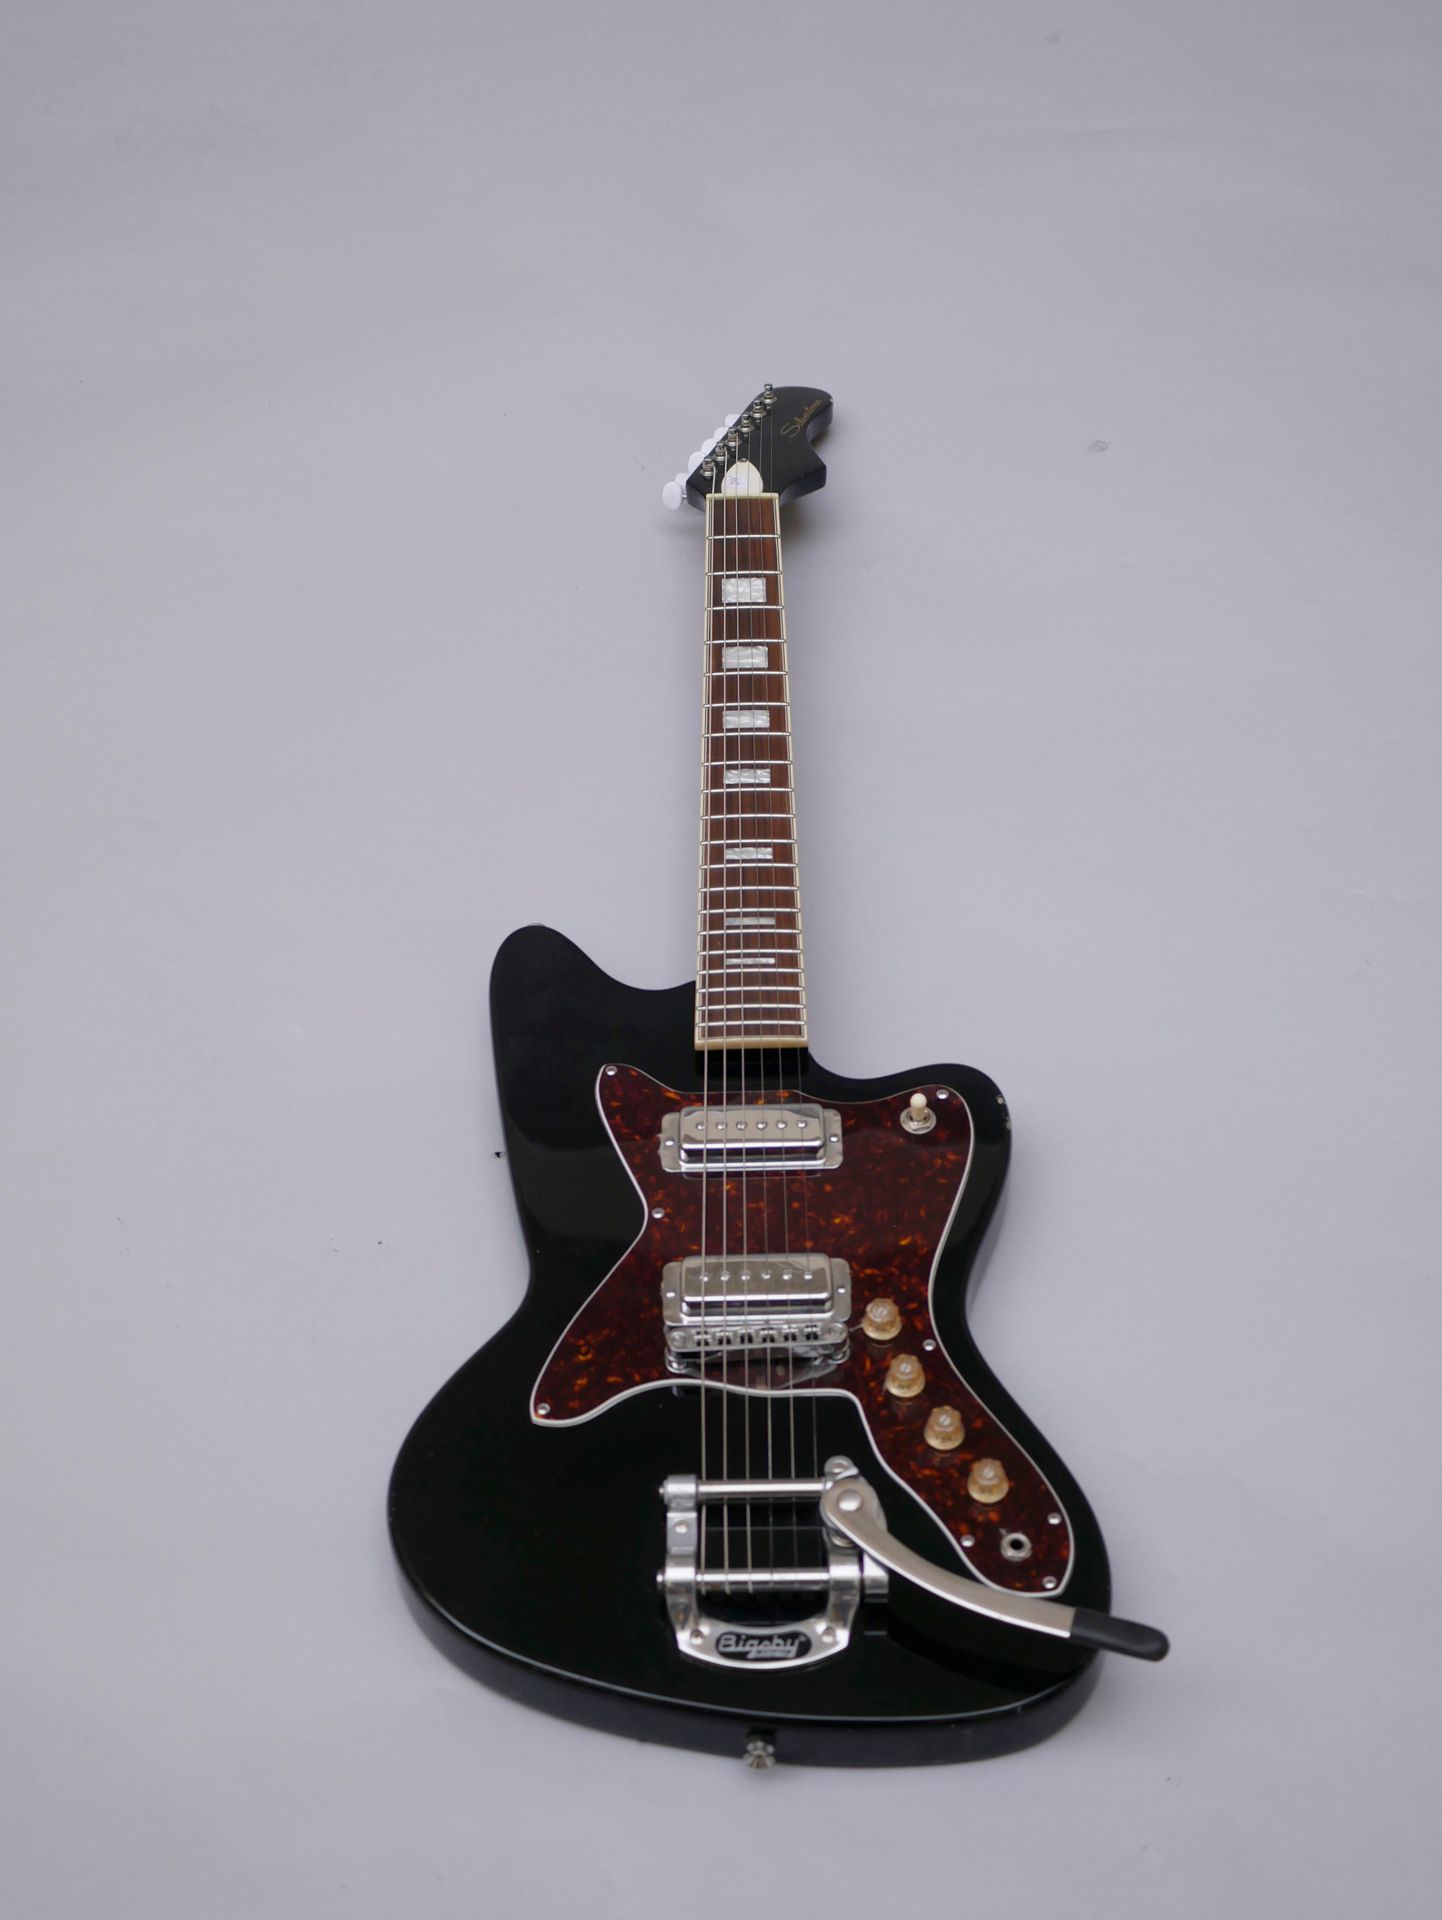 Null 实体电吉他Silvertone型号1478，印度尼西亚制造。

状况良好，清漆有缺口，毛呢琴盒。

(经测试的电子产品)